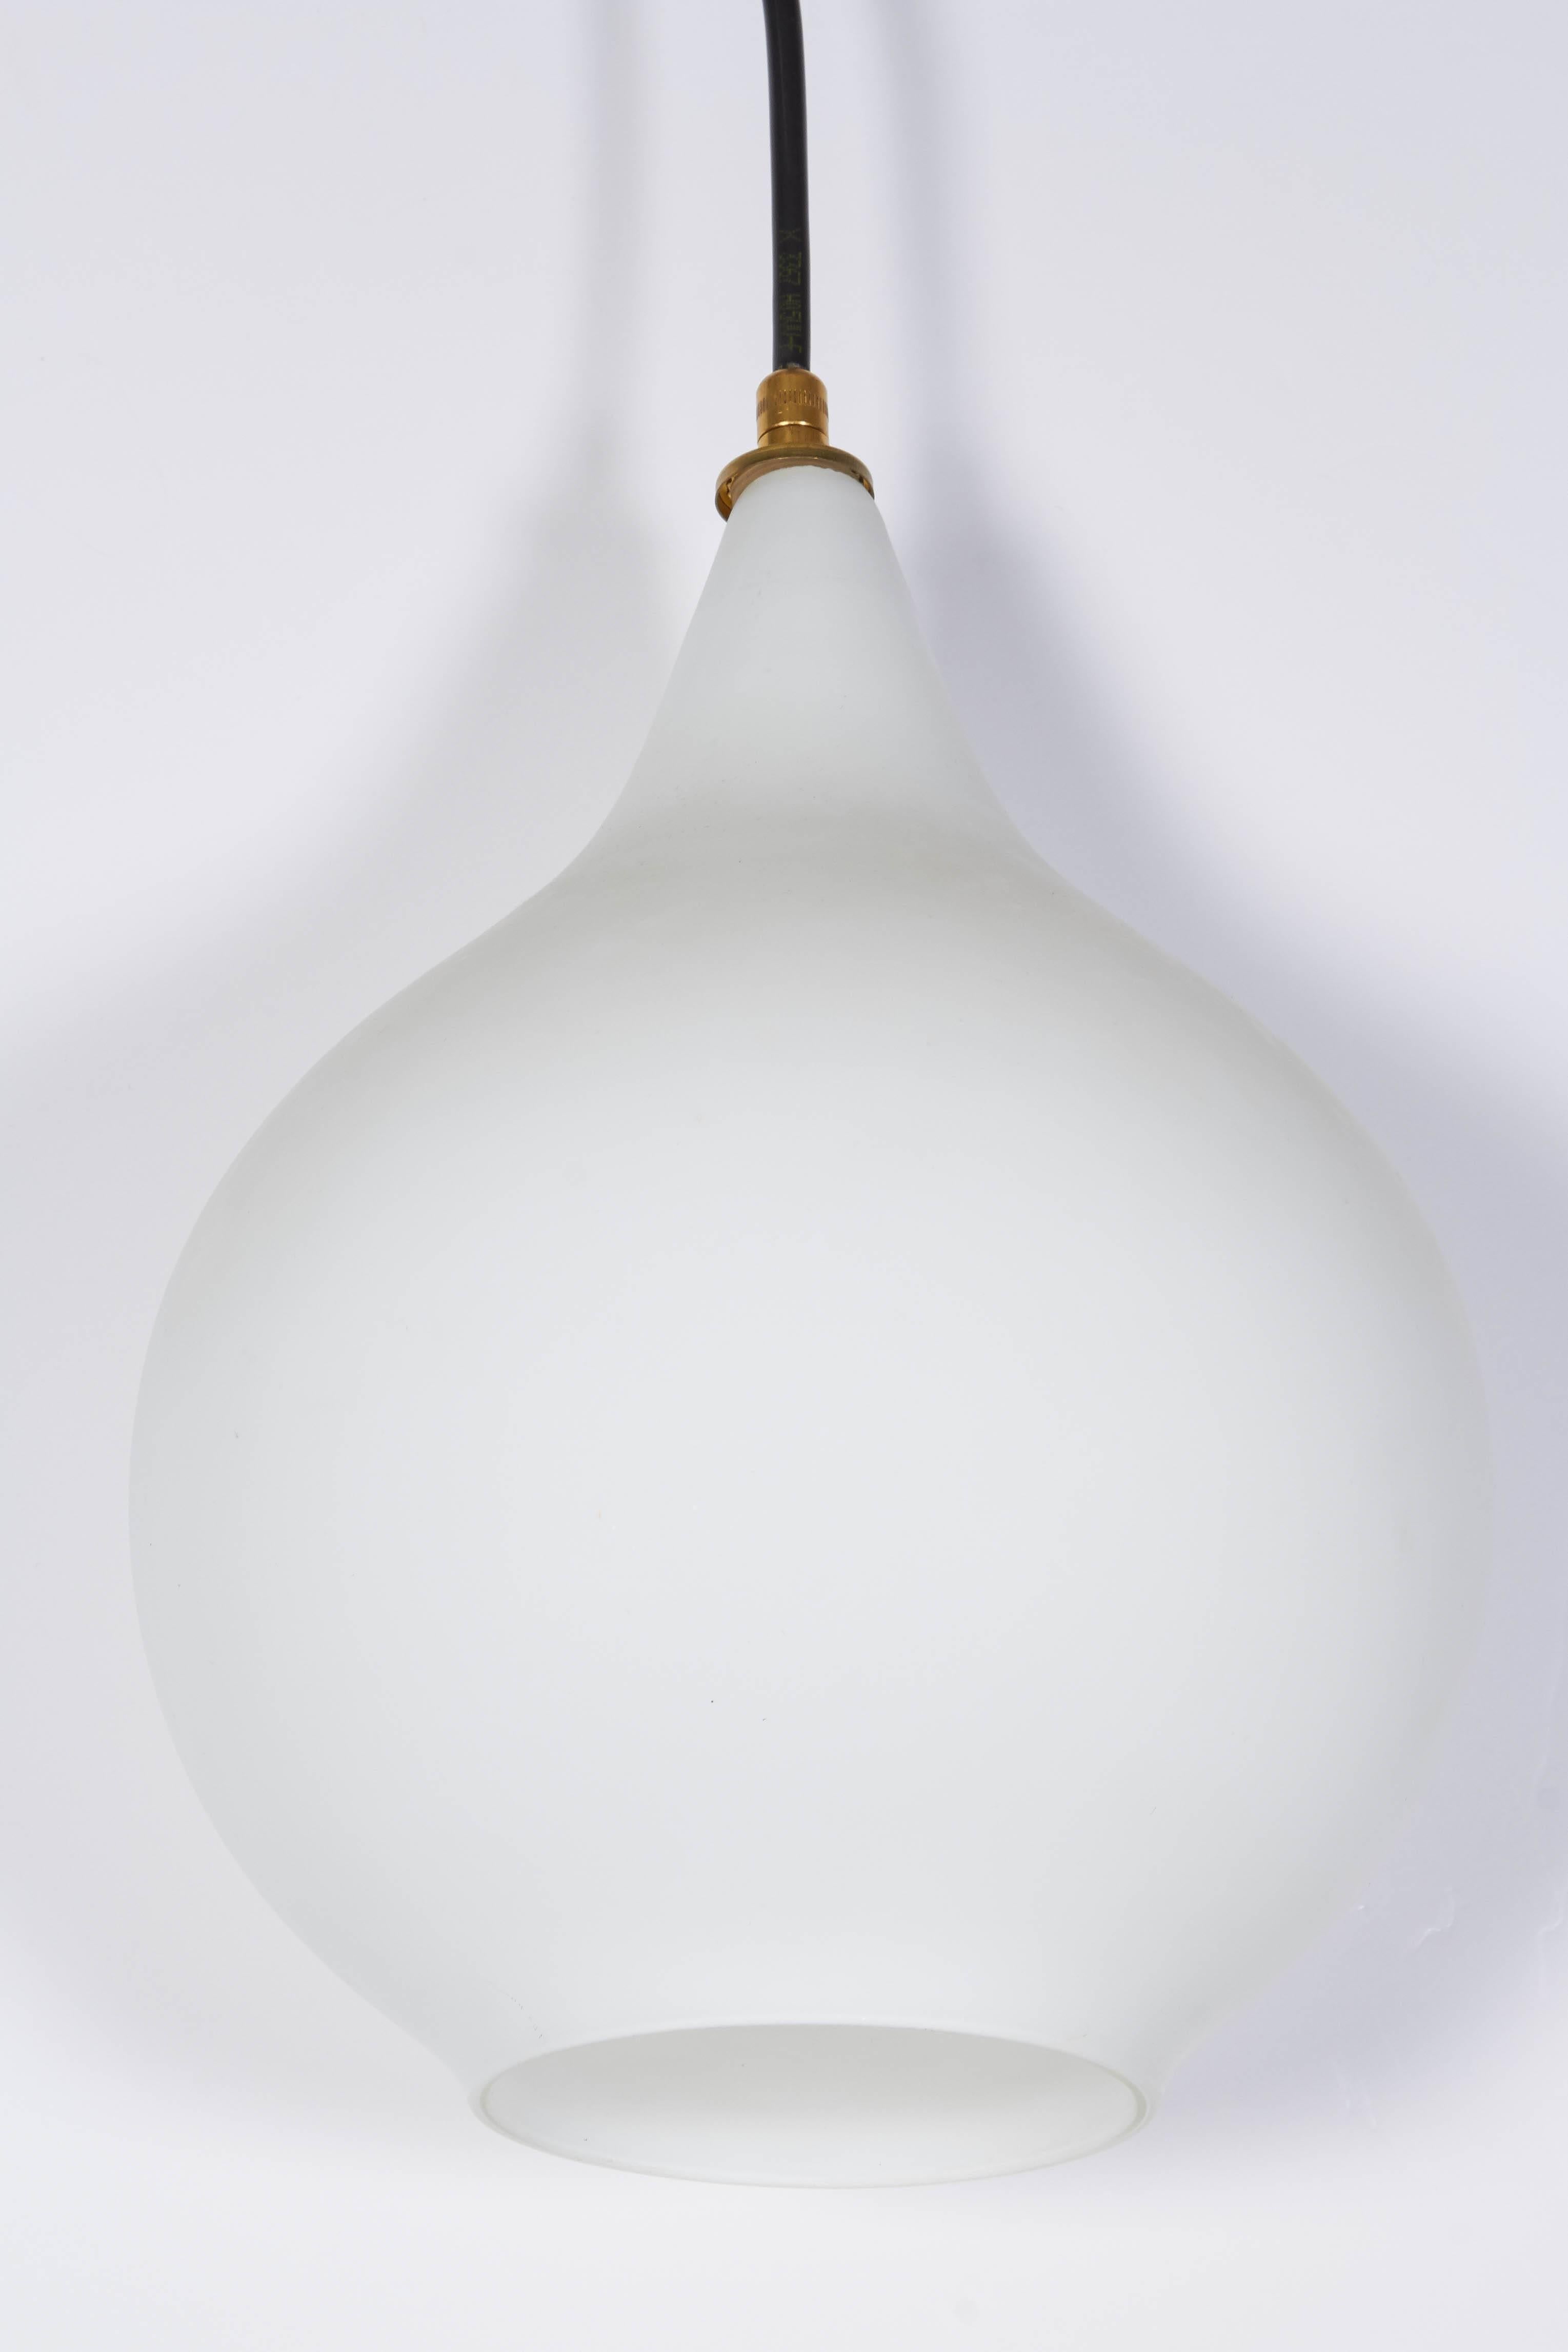 Italienische mundgeblasene Pendelleuchte, um 1950. Der Glasschirm ist mit einer klaren, satinierten Schicht über weißem Glas überzogen und hat die Form eines Tropfens. Hält eine Standard-Glühbirne. Der Schirm hat einen Durchmesser von 8